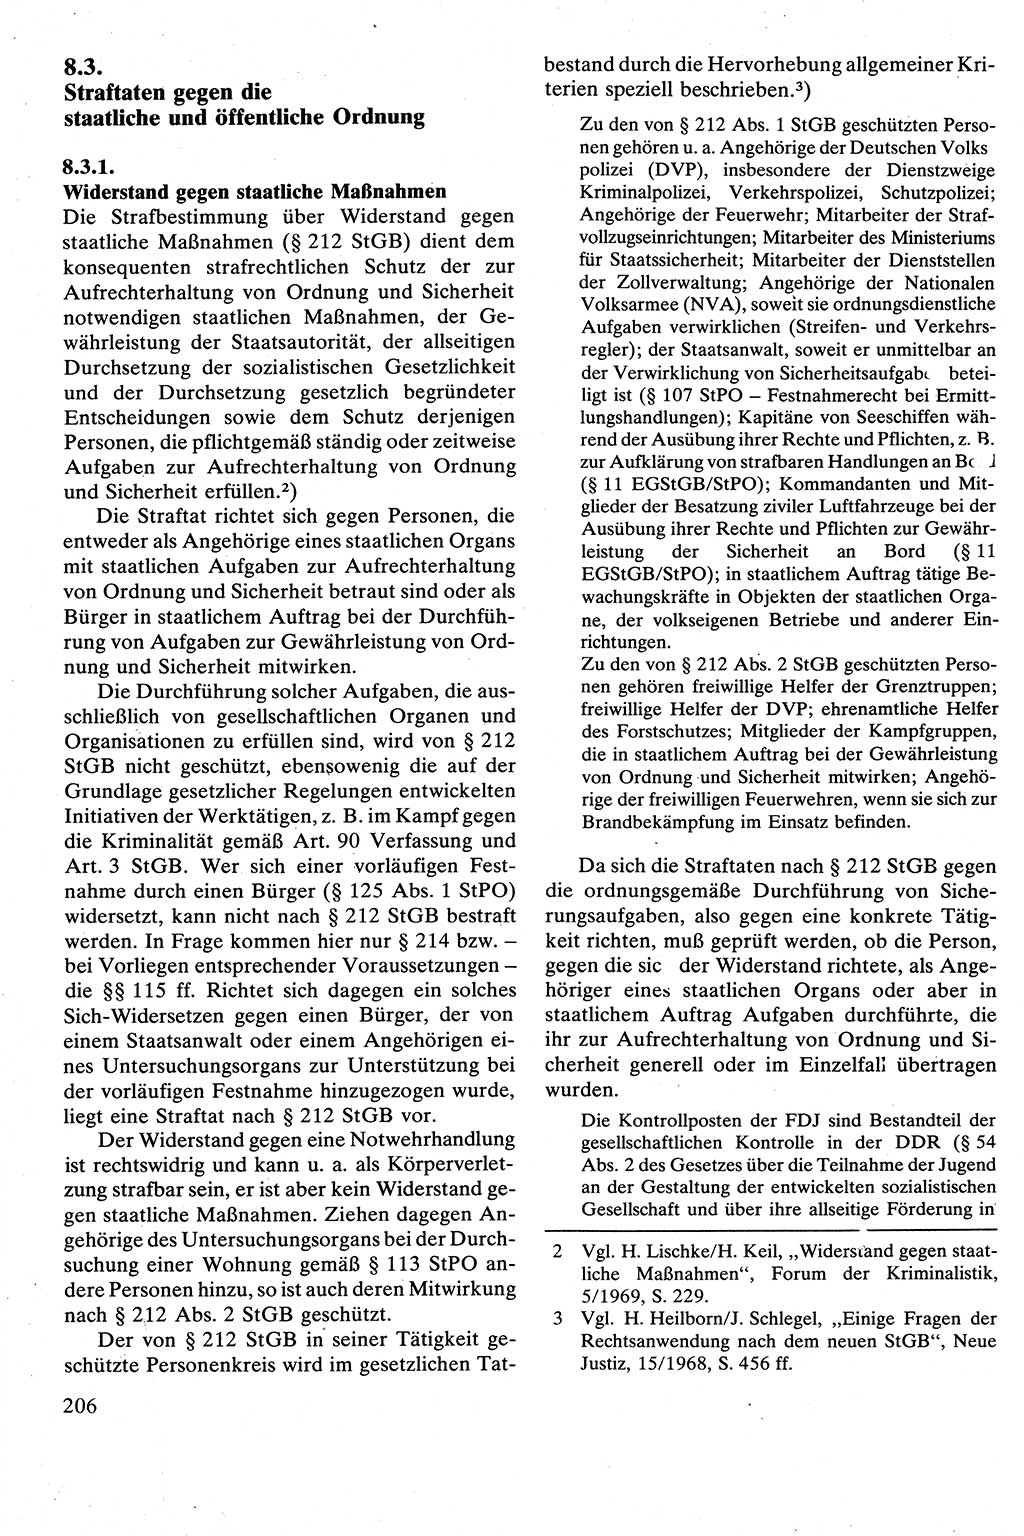 Strafrecht [Deutsche Demokratische Republik (DDR)], Besonderer Teil, Lehrbuch 1981, Seite 206 (Strafr. DDR BT Lb. 1981, S. 206)